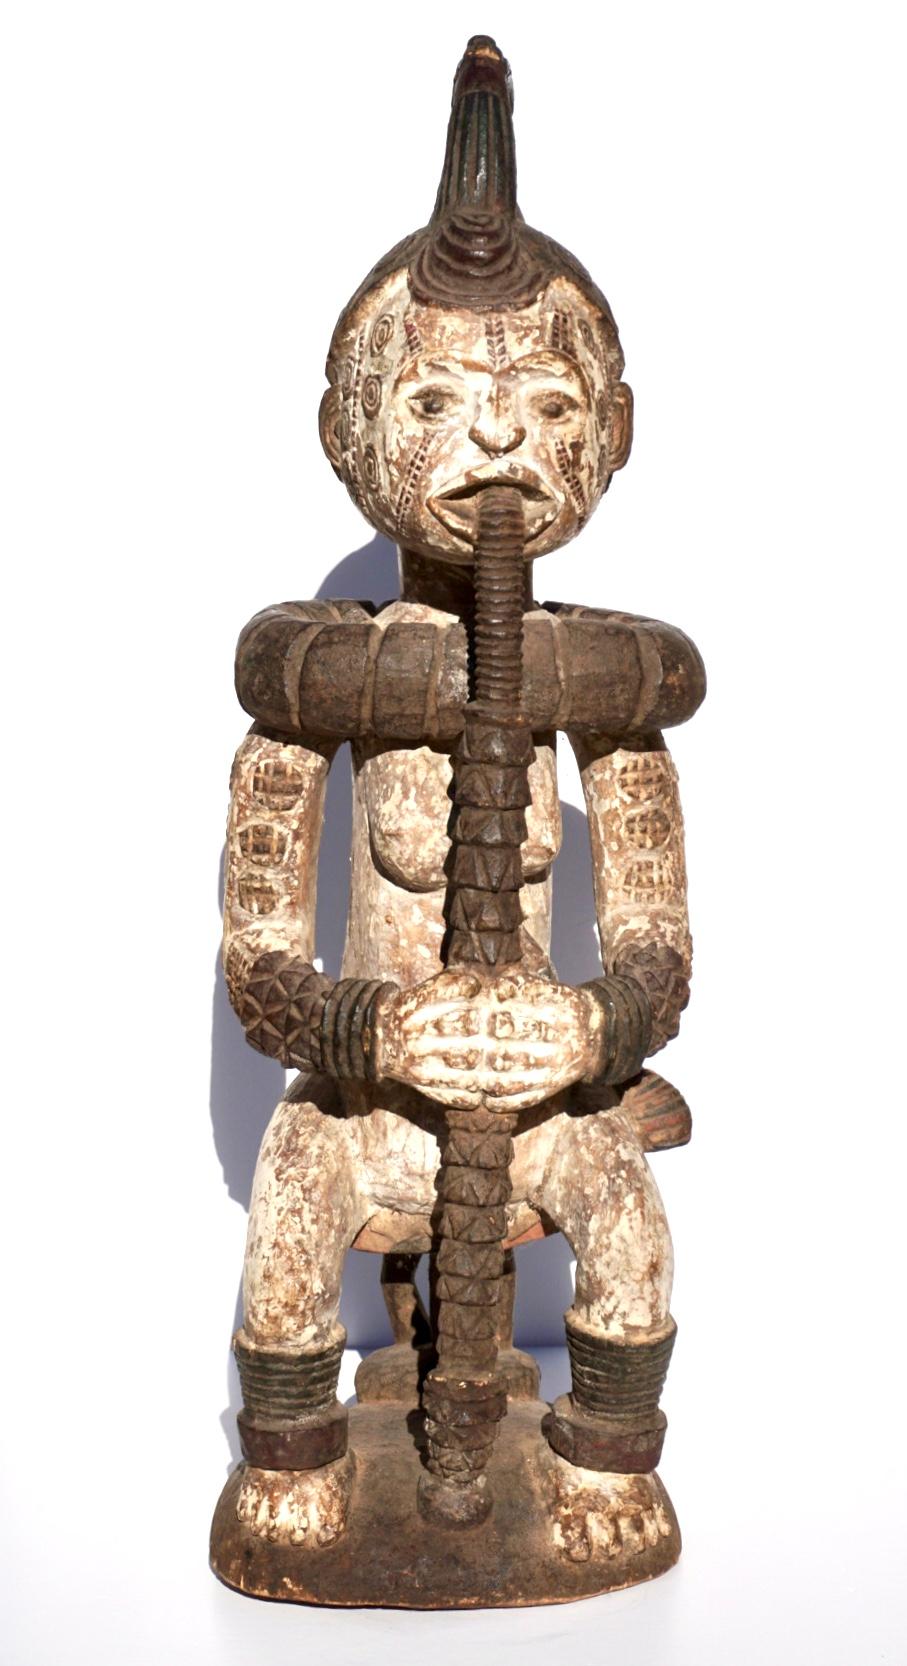 Idoma Ibo Weibliche Figur. Afrika, Nigeria 20. Jahrhundert oder früher.

Eine sitzende weibliche Figur auf einem Hocker, die eine lange Pfeife raucht, mit Pigmenten bemalt und mit Skarifikationen verziert, in stolzer Pose. Der helle Körper ist mit